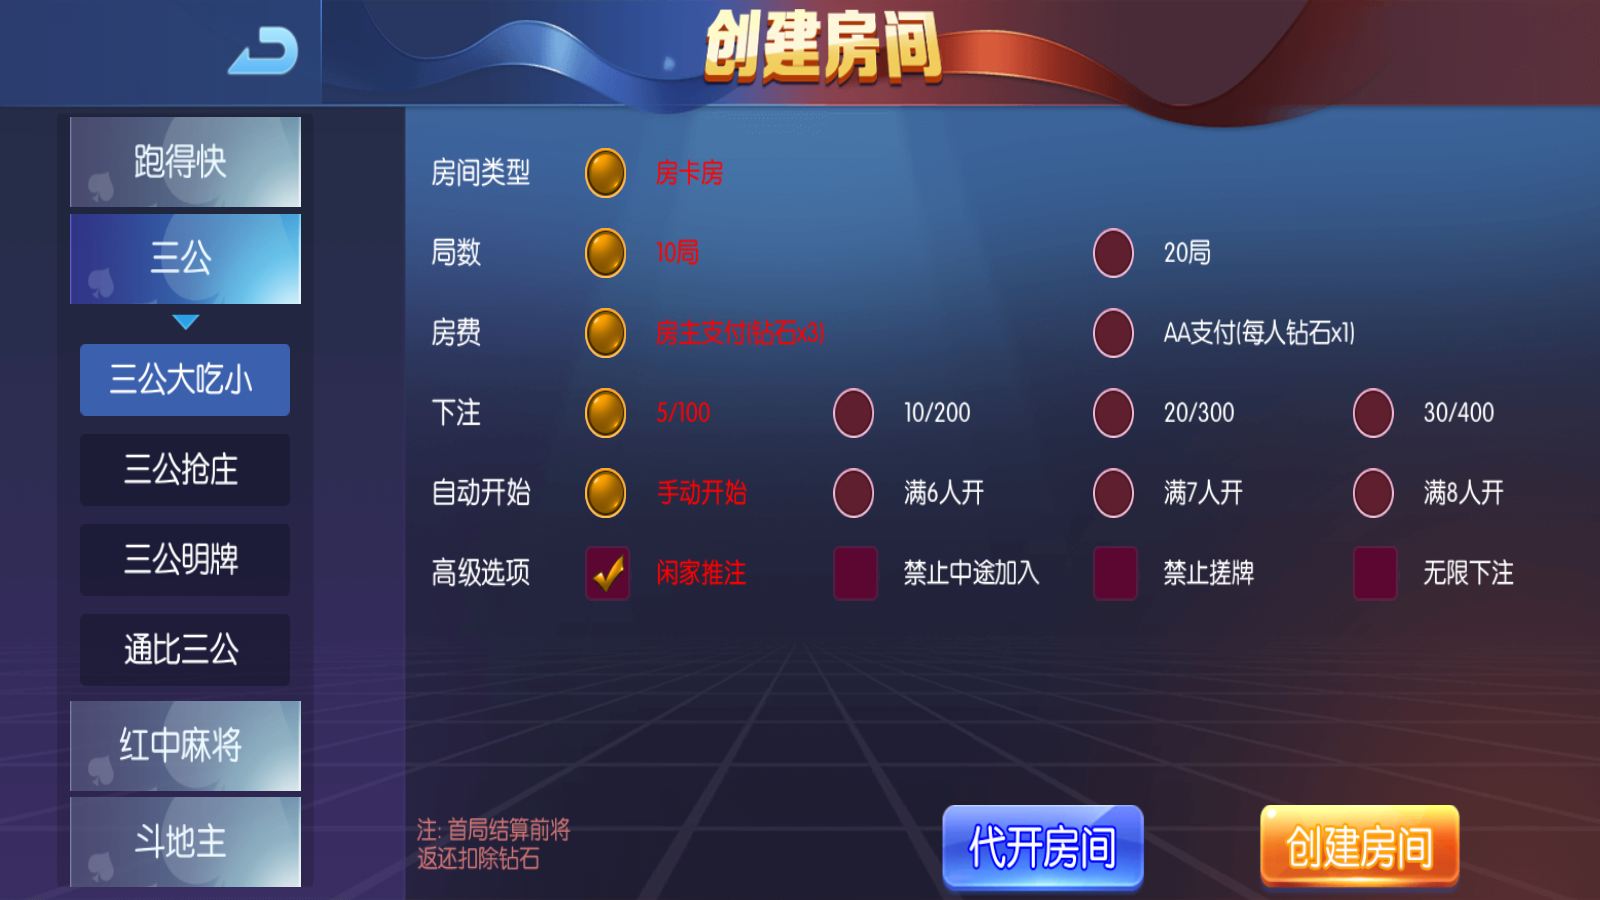 新版五游牛王+大联盟运营版棋牌组件 UI美观大方插图3